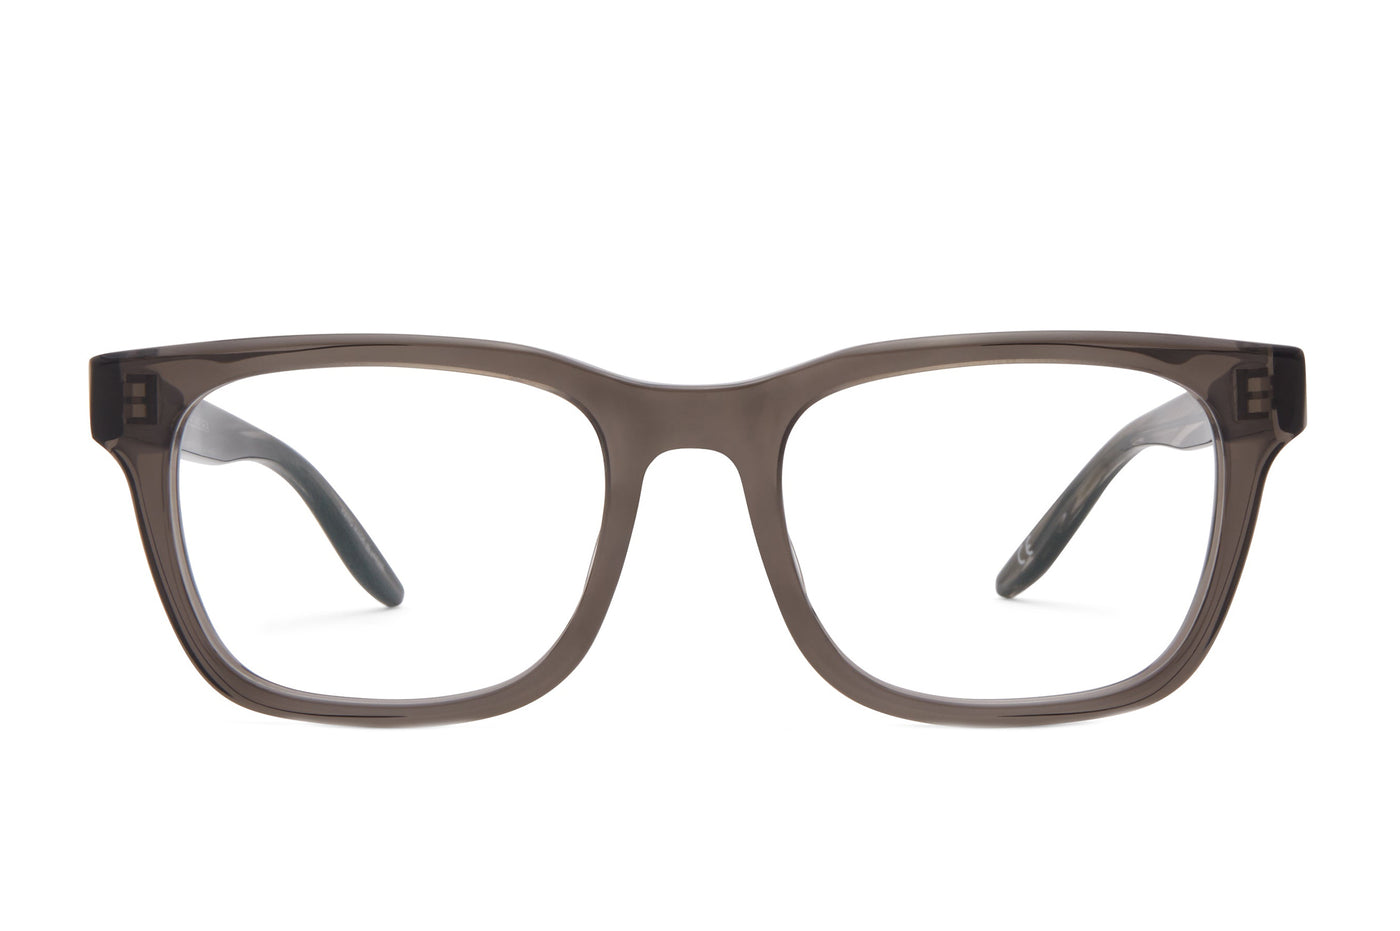 Weller Clear Glasses Frames - Women's Eyewear